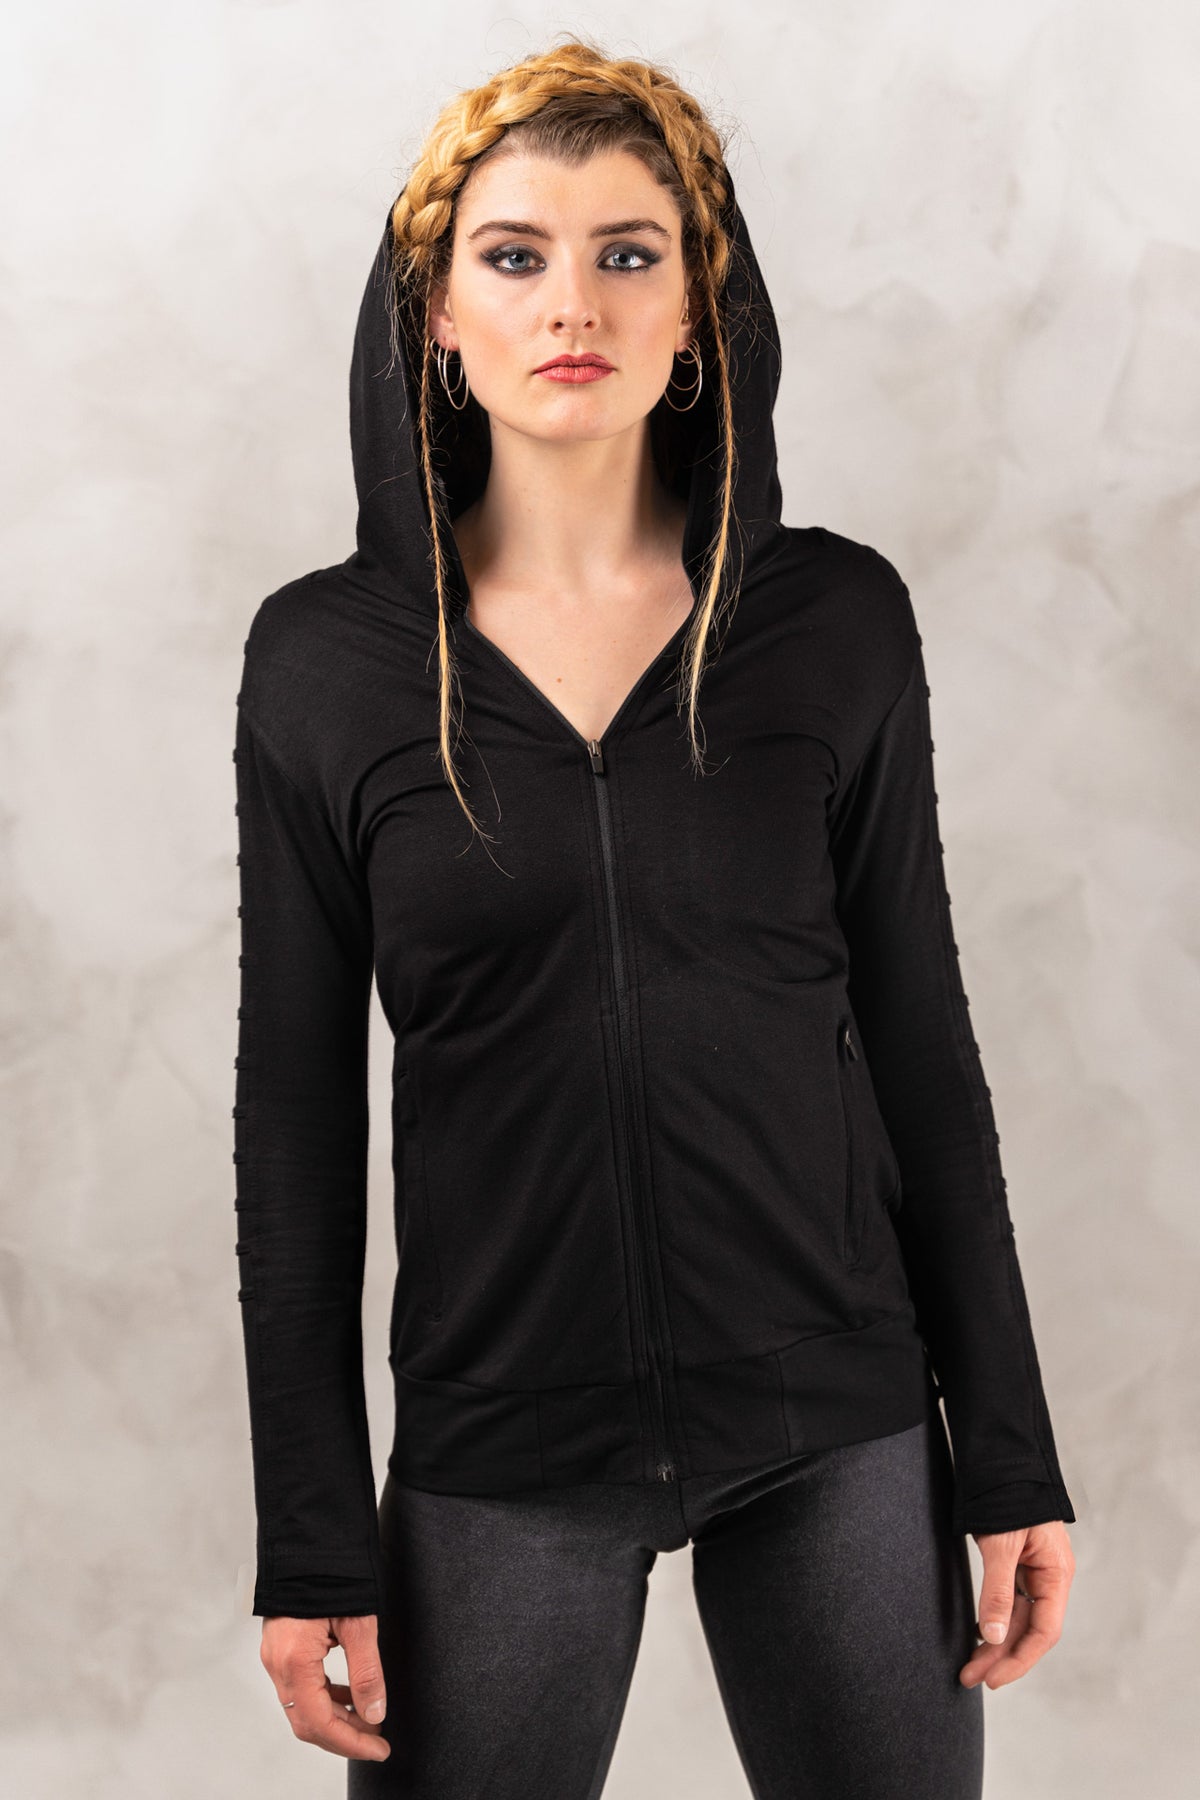 a woman wearing a black hoodie and black leggings